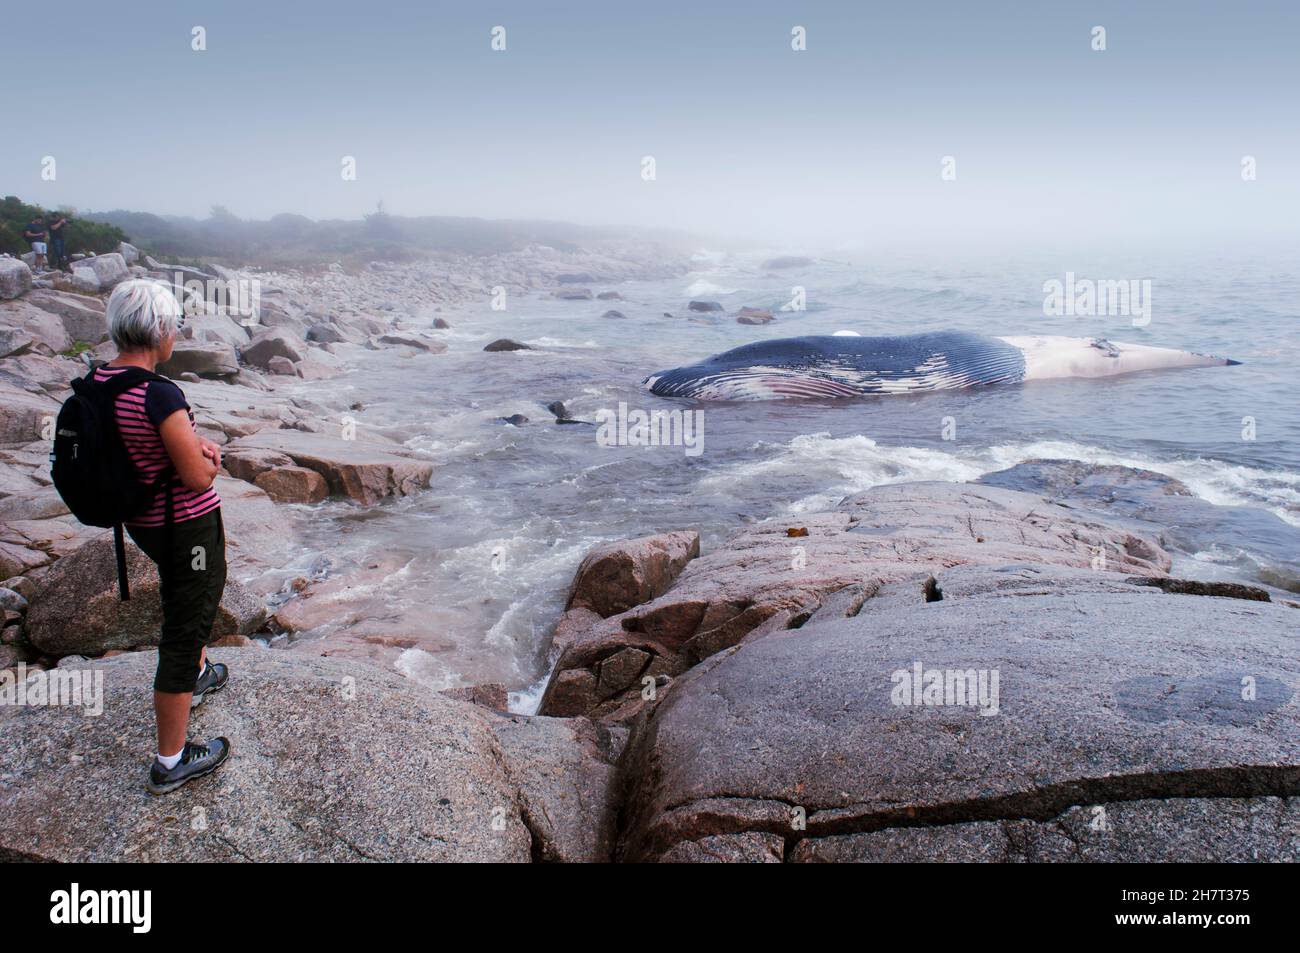 Une femme regarde une baleine bleue morte près de la rive rocheuse de l'océan Atlantique, Halifax, Nouvelle-Écosse, Canada.Une espèce en voie de disparition.30 mètres Banque D'Images